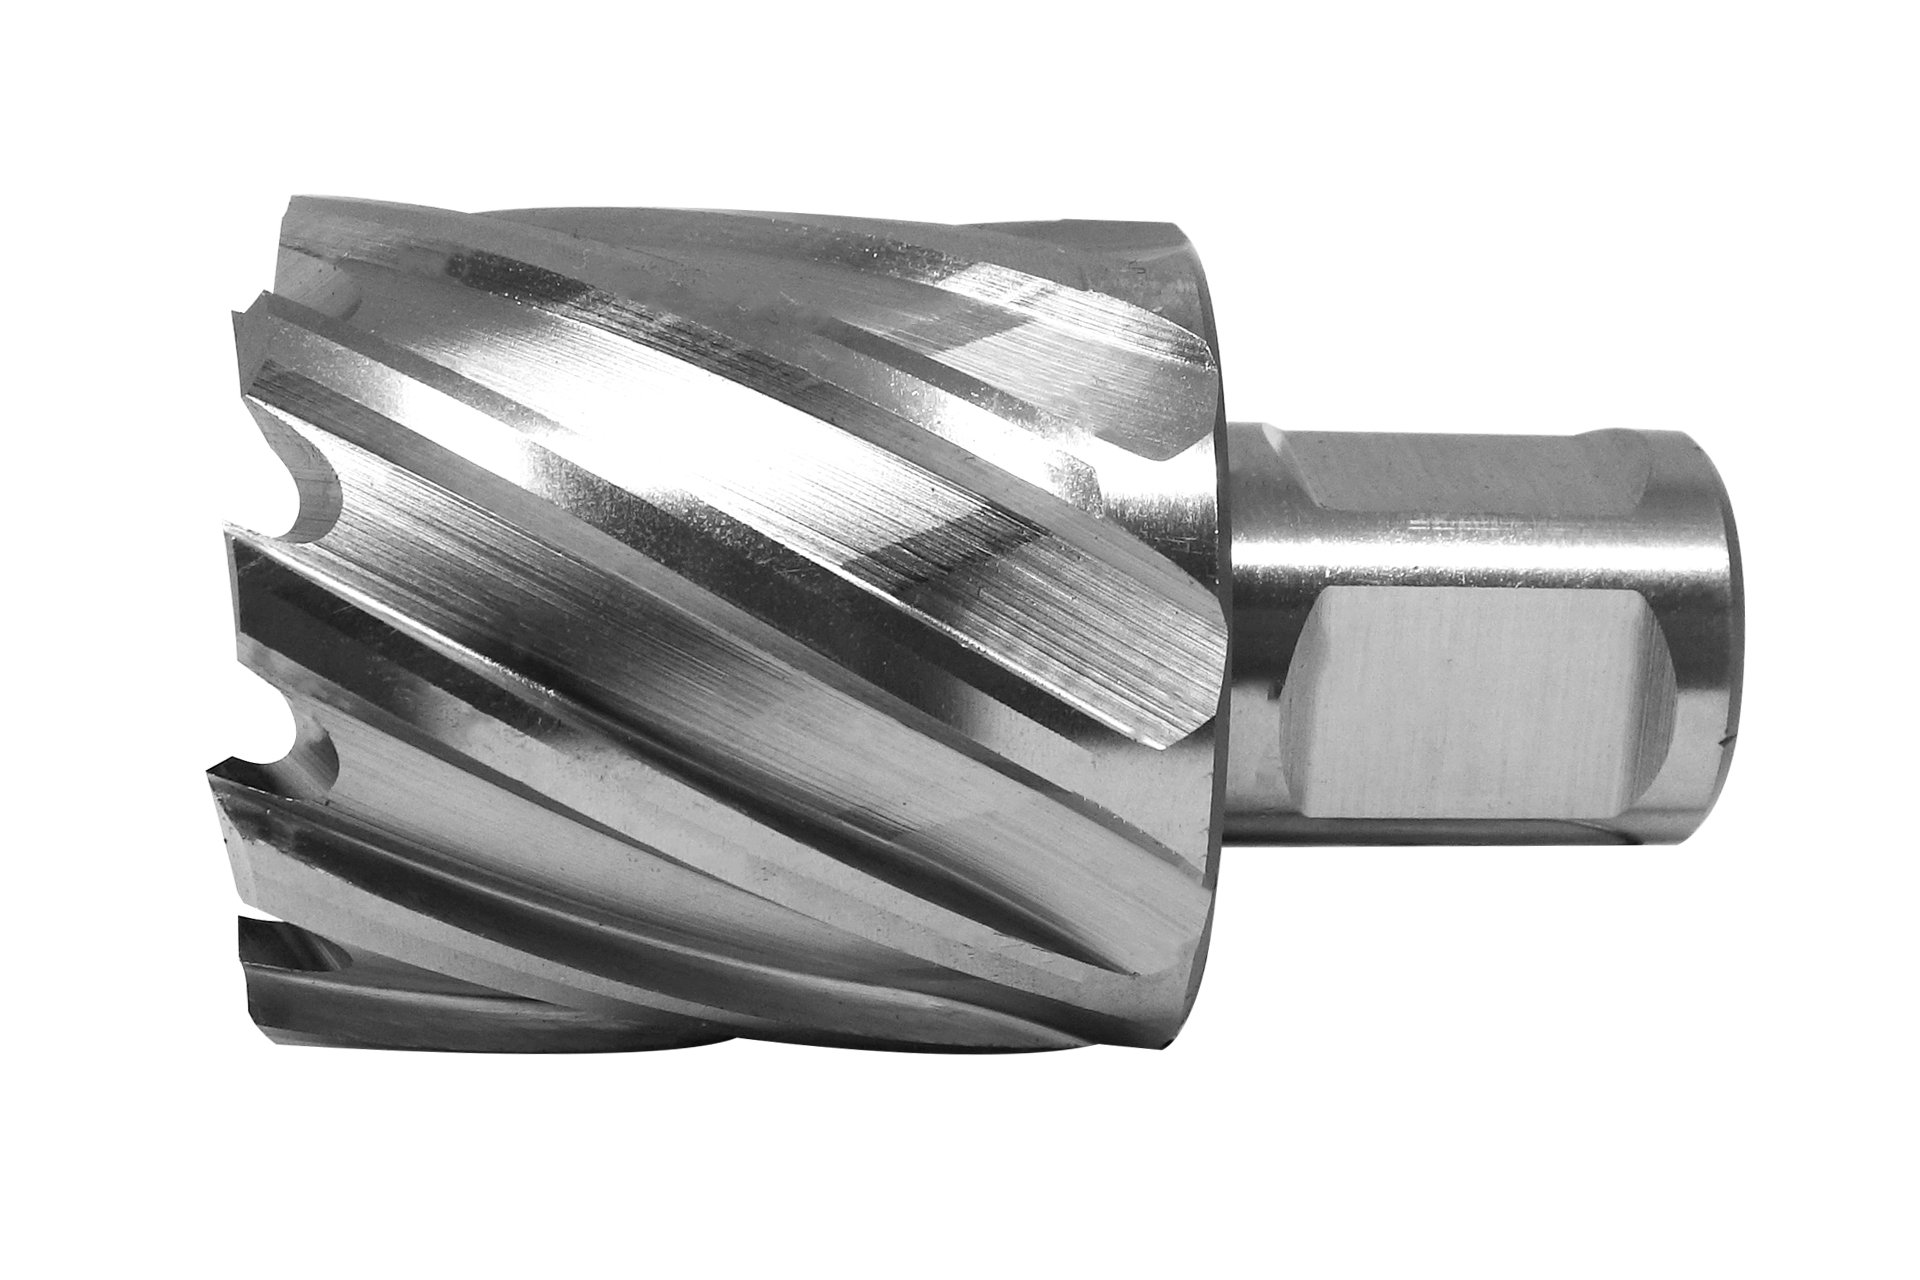 HSS-Kernbohrer mit Bohrtiefe 30 mm, Ø 36 mm